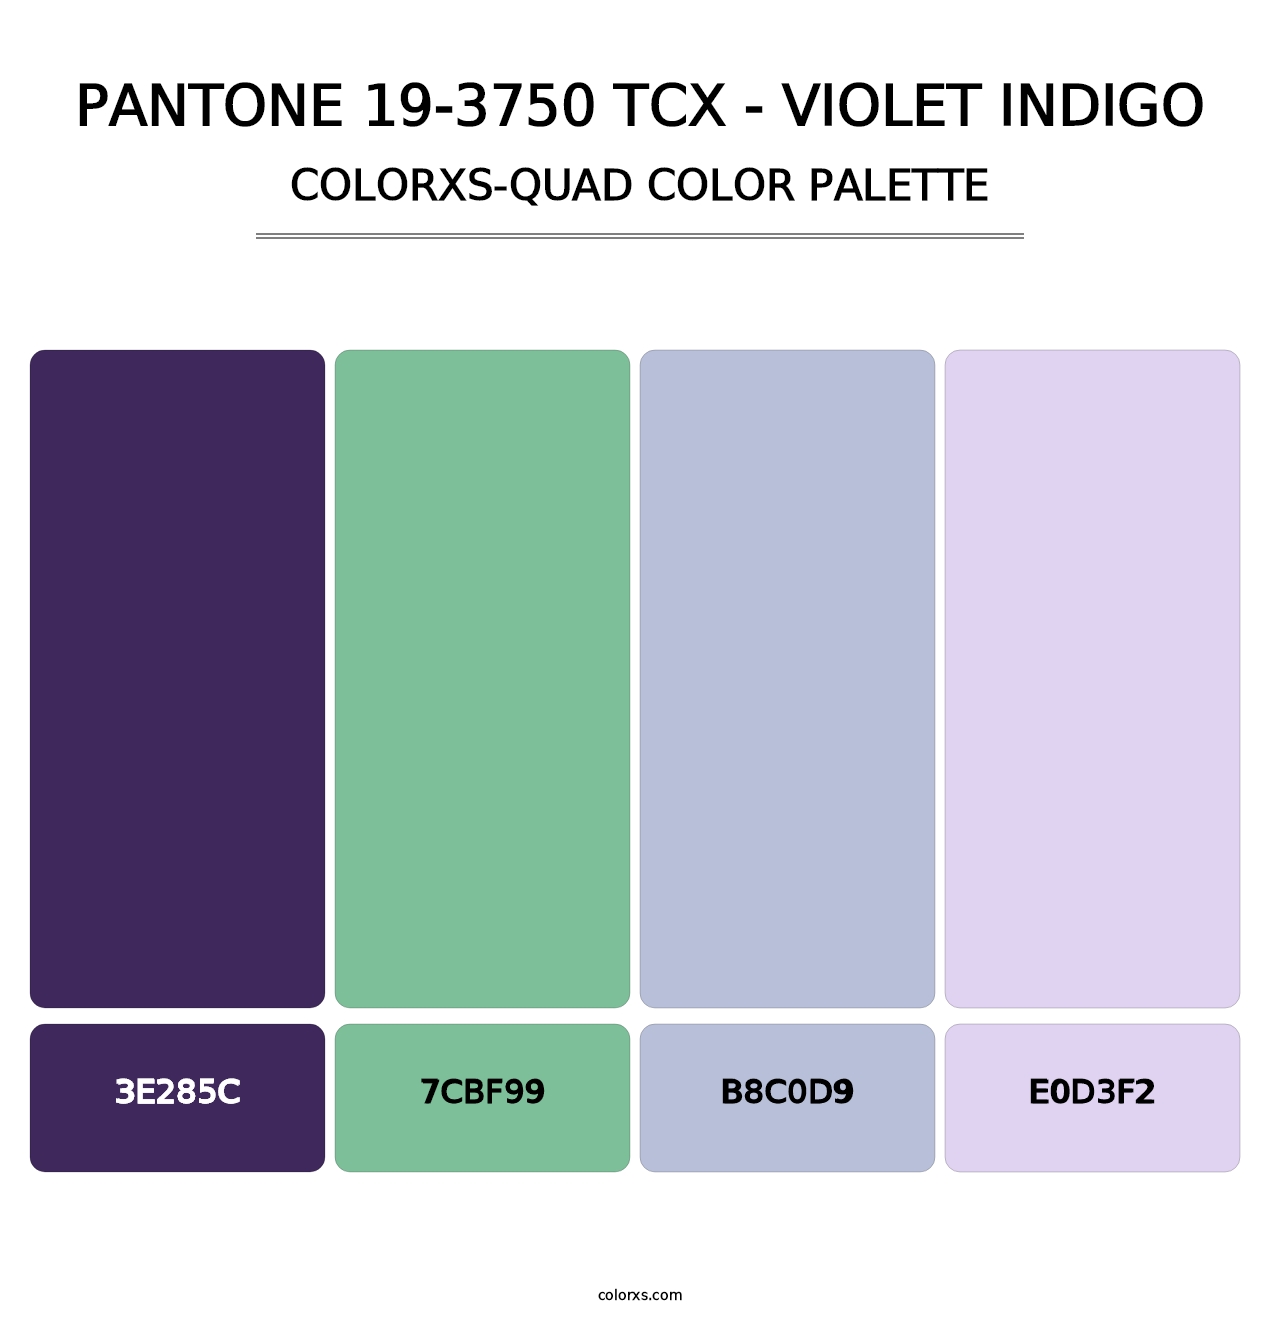 PANTONE 19-3750 TCX - Violet Indigo - Colorxs Quad Palette